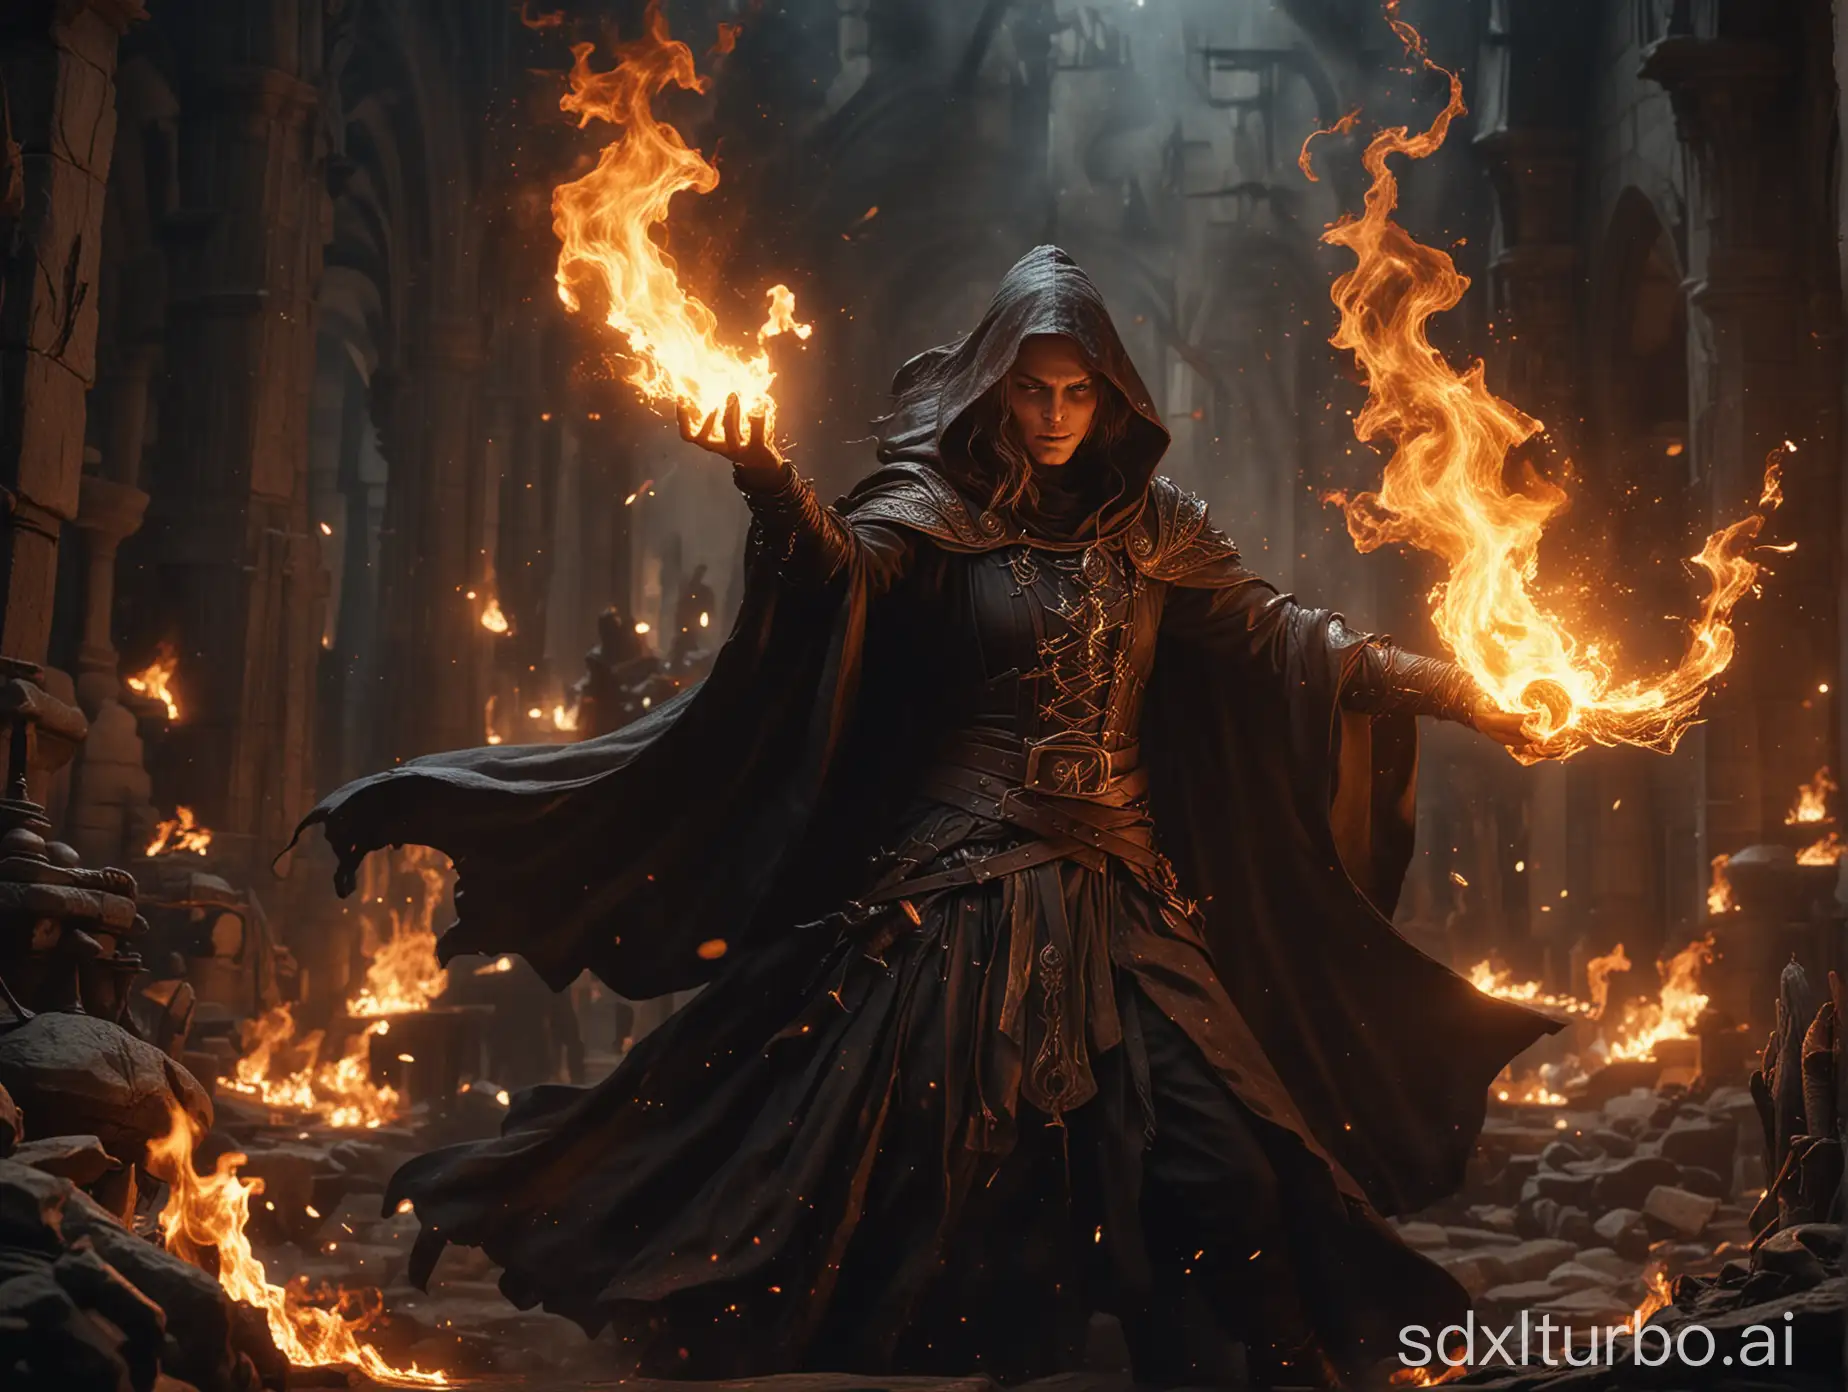 一个火光四射的场景，黑巫师正在与光明使者大战，两人纷纷使出魔法